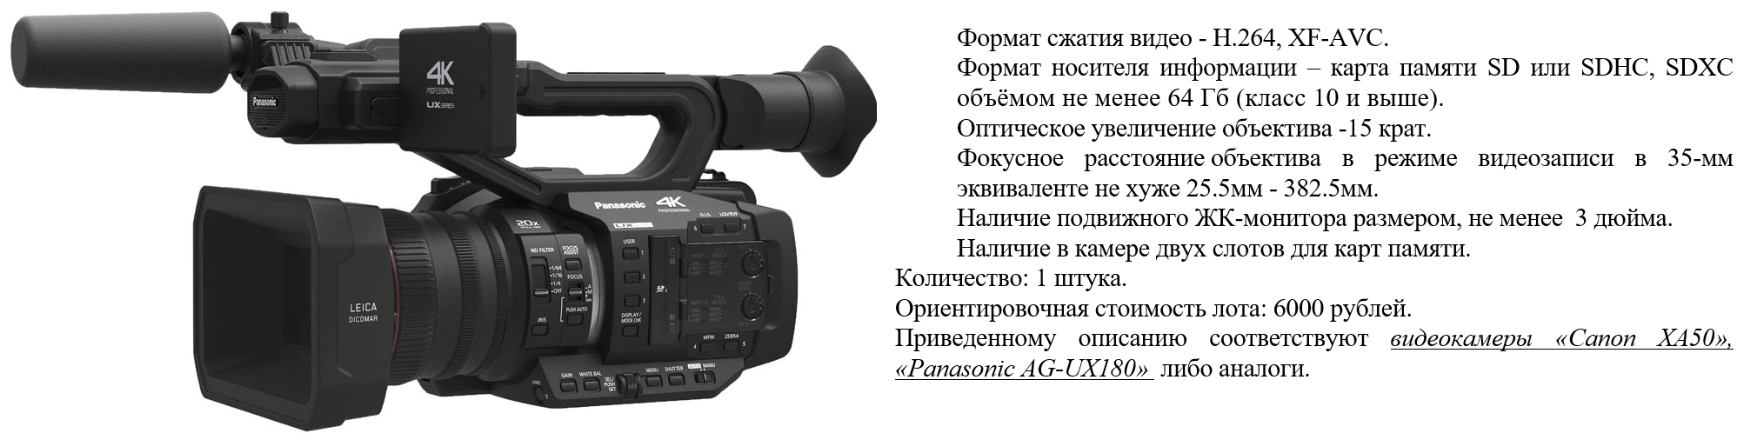 МВД потратит $57 тысяч на новые диктофоны и видеокамеры (в том числе GoPro)